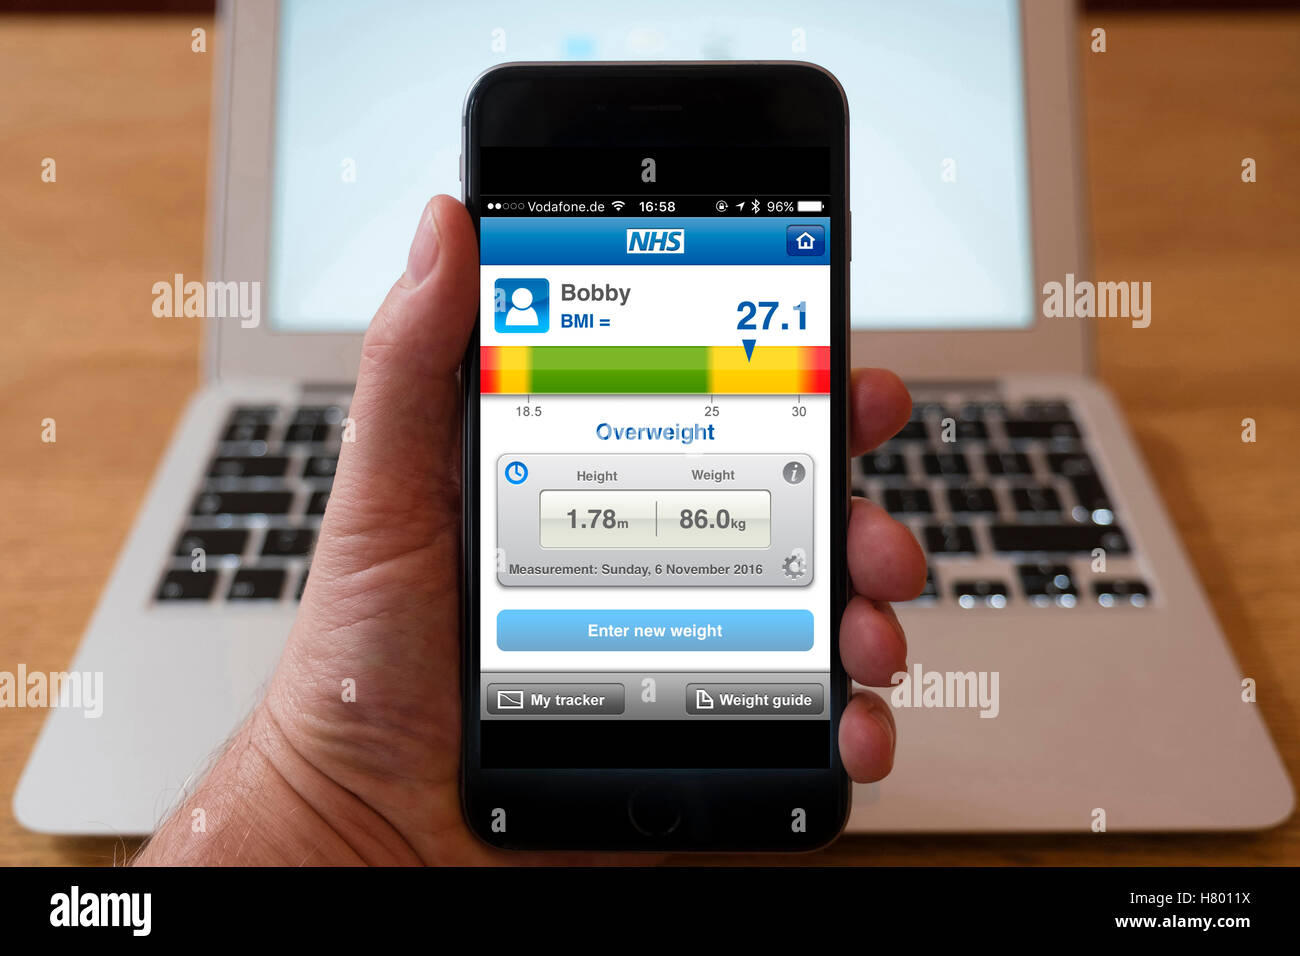 Usando el iPhone Smartphone Mostrar NHS (Servicio Nacional de Salud) el IMC (índice de masa corporal) calculadora Foto de stock